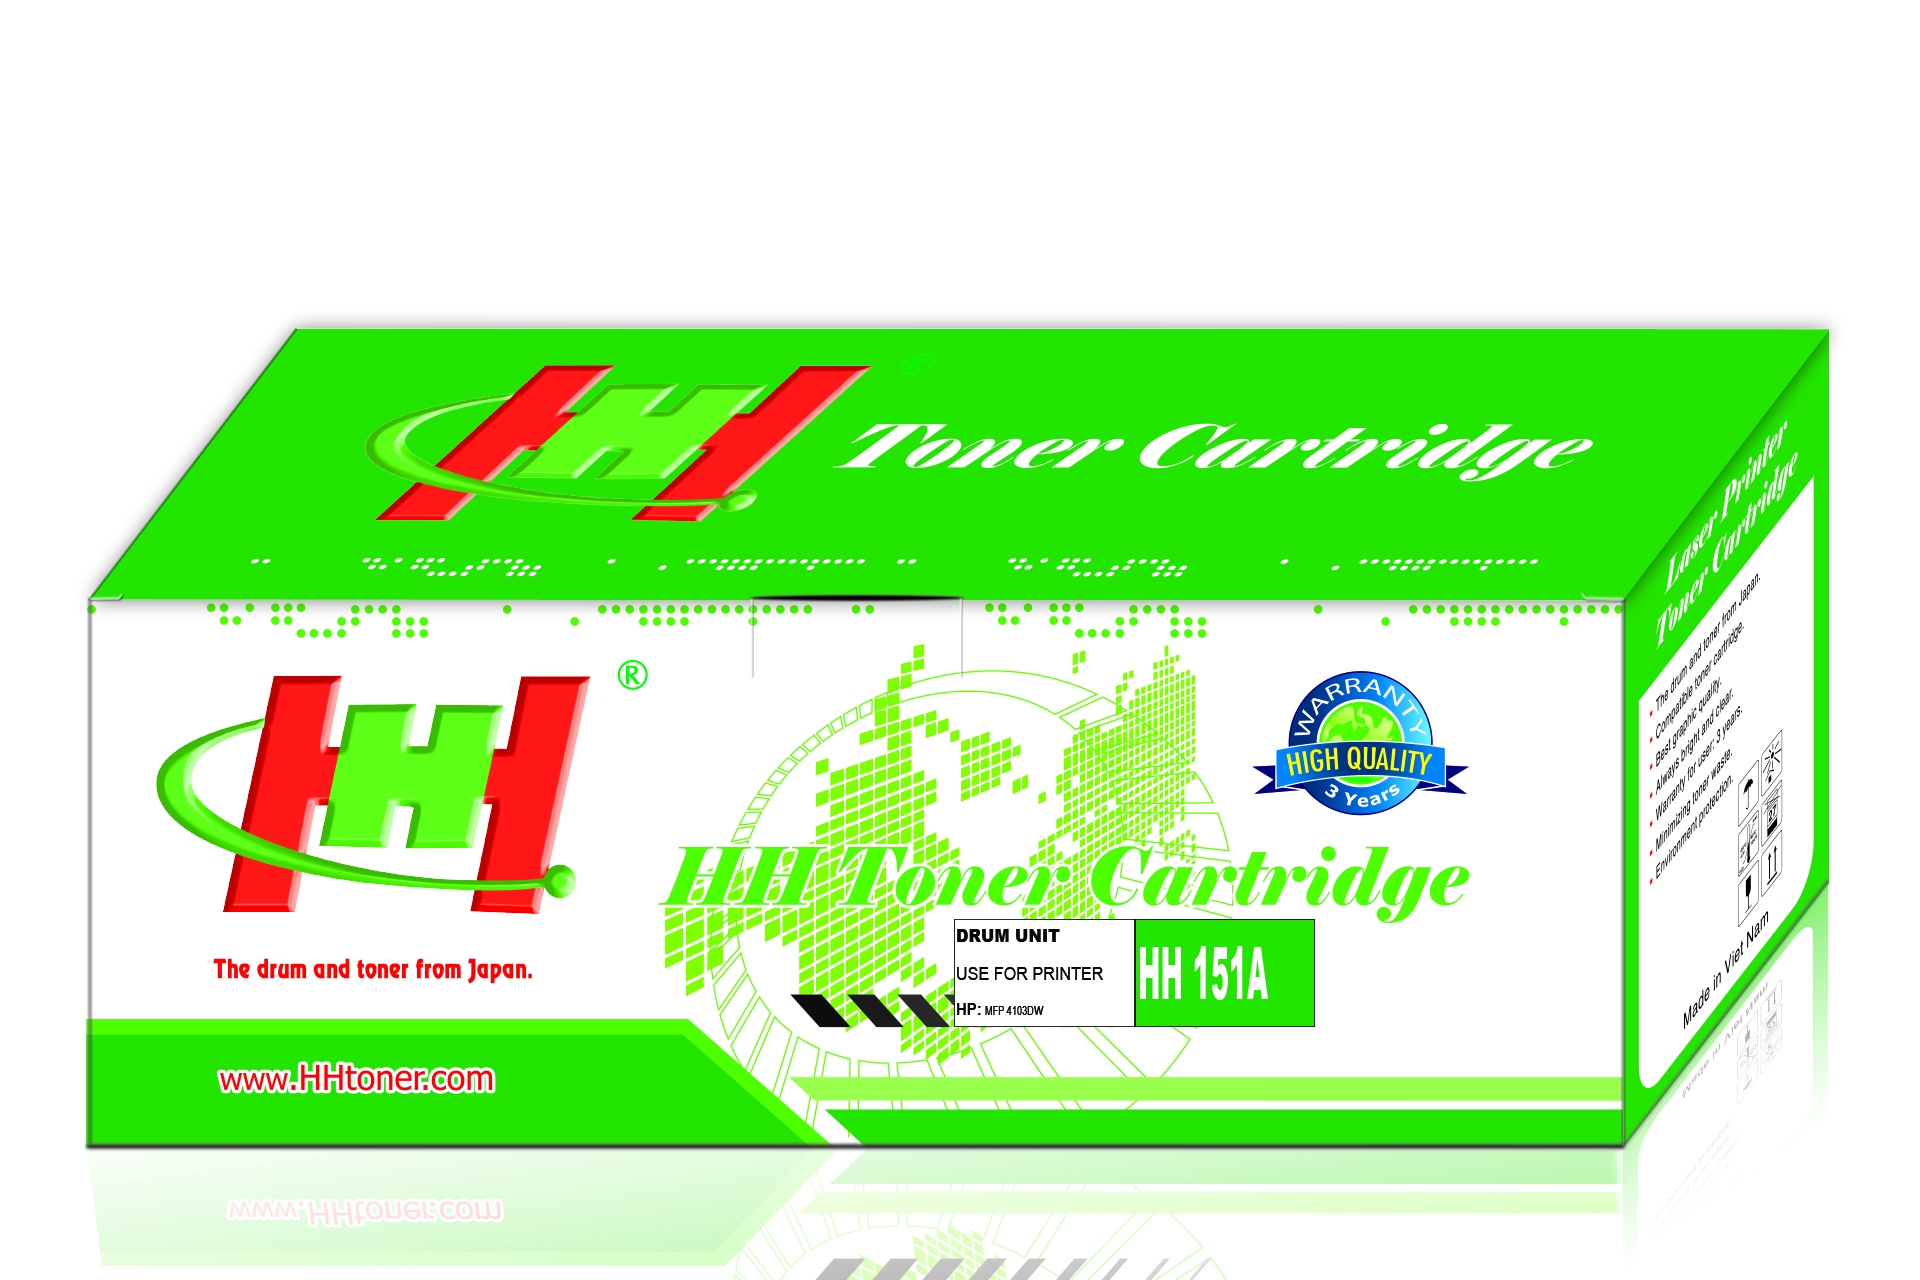 Mực Máy in HP LaserJet Pro MFP 4103dw Printer (2Z627A) thương hiệu HH không chíp